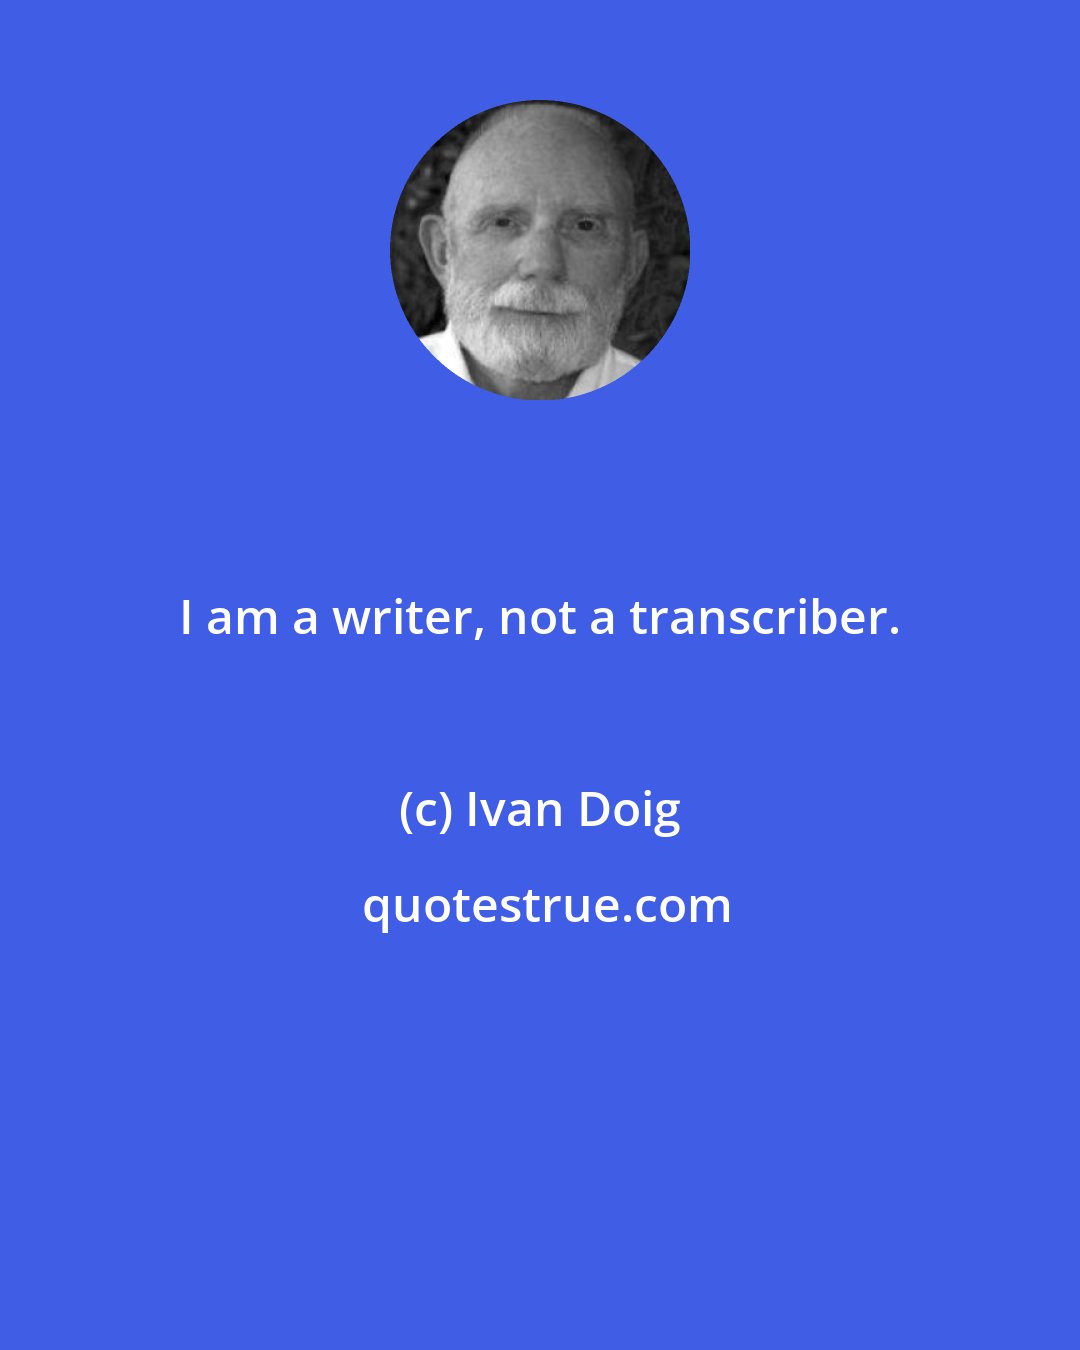 Ivan Doig: I am a writer, not a transcriber.